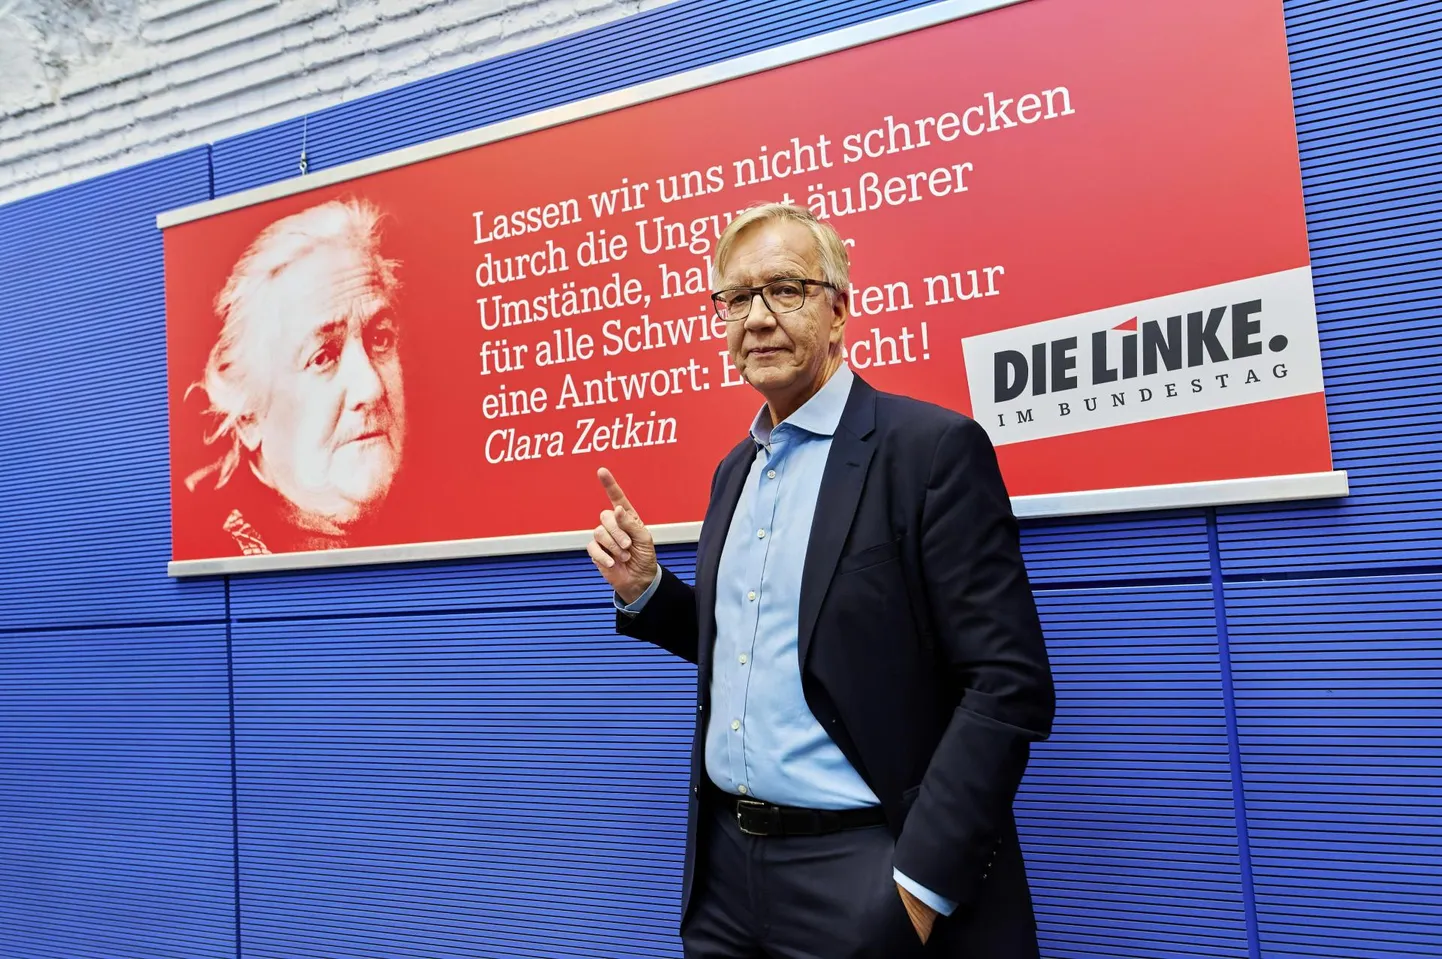 Die Linke fraktsiooni esimees Dietmar Bartsch enne fraktsiooni laialisaatmisotsust 14. novembril.      

 